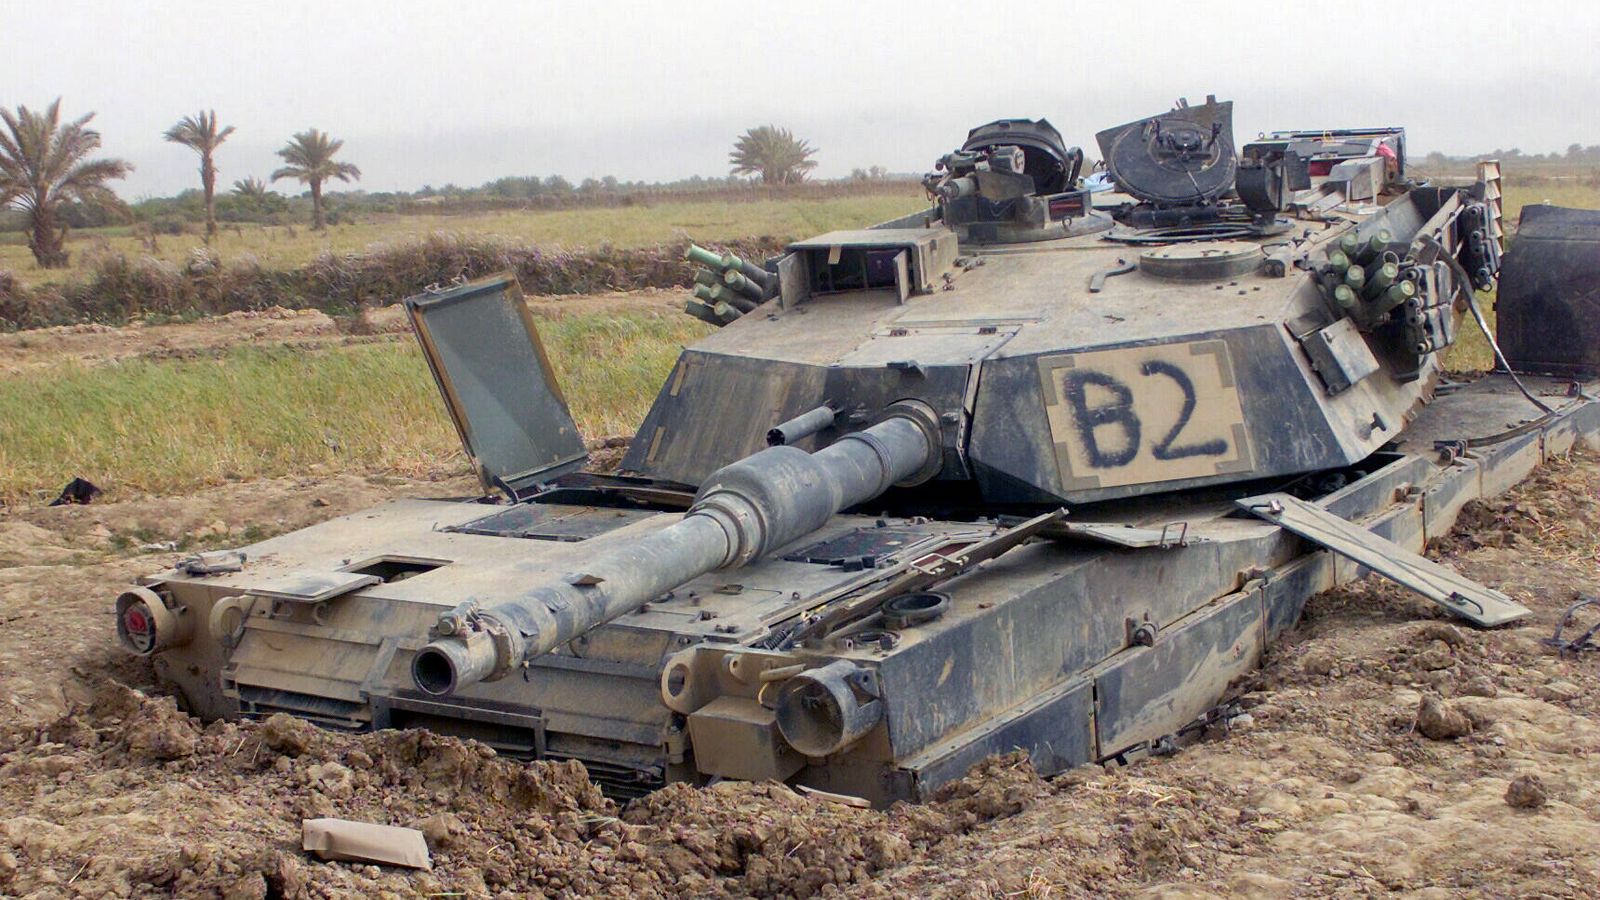 Abrams M1A1 destruido, cerca de Sayyid Abd, Iraq. (Sargento Howard J. Farrell, Cuerpo de Infantería de Marina de los Estados Unidos)